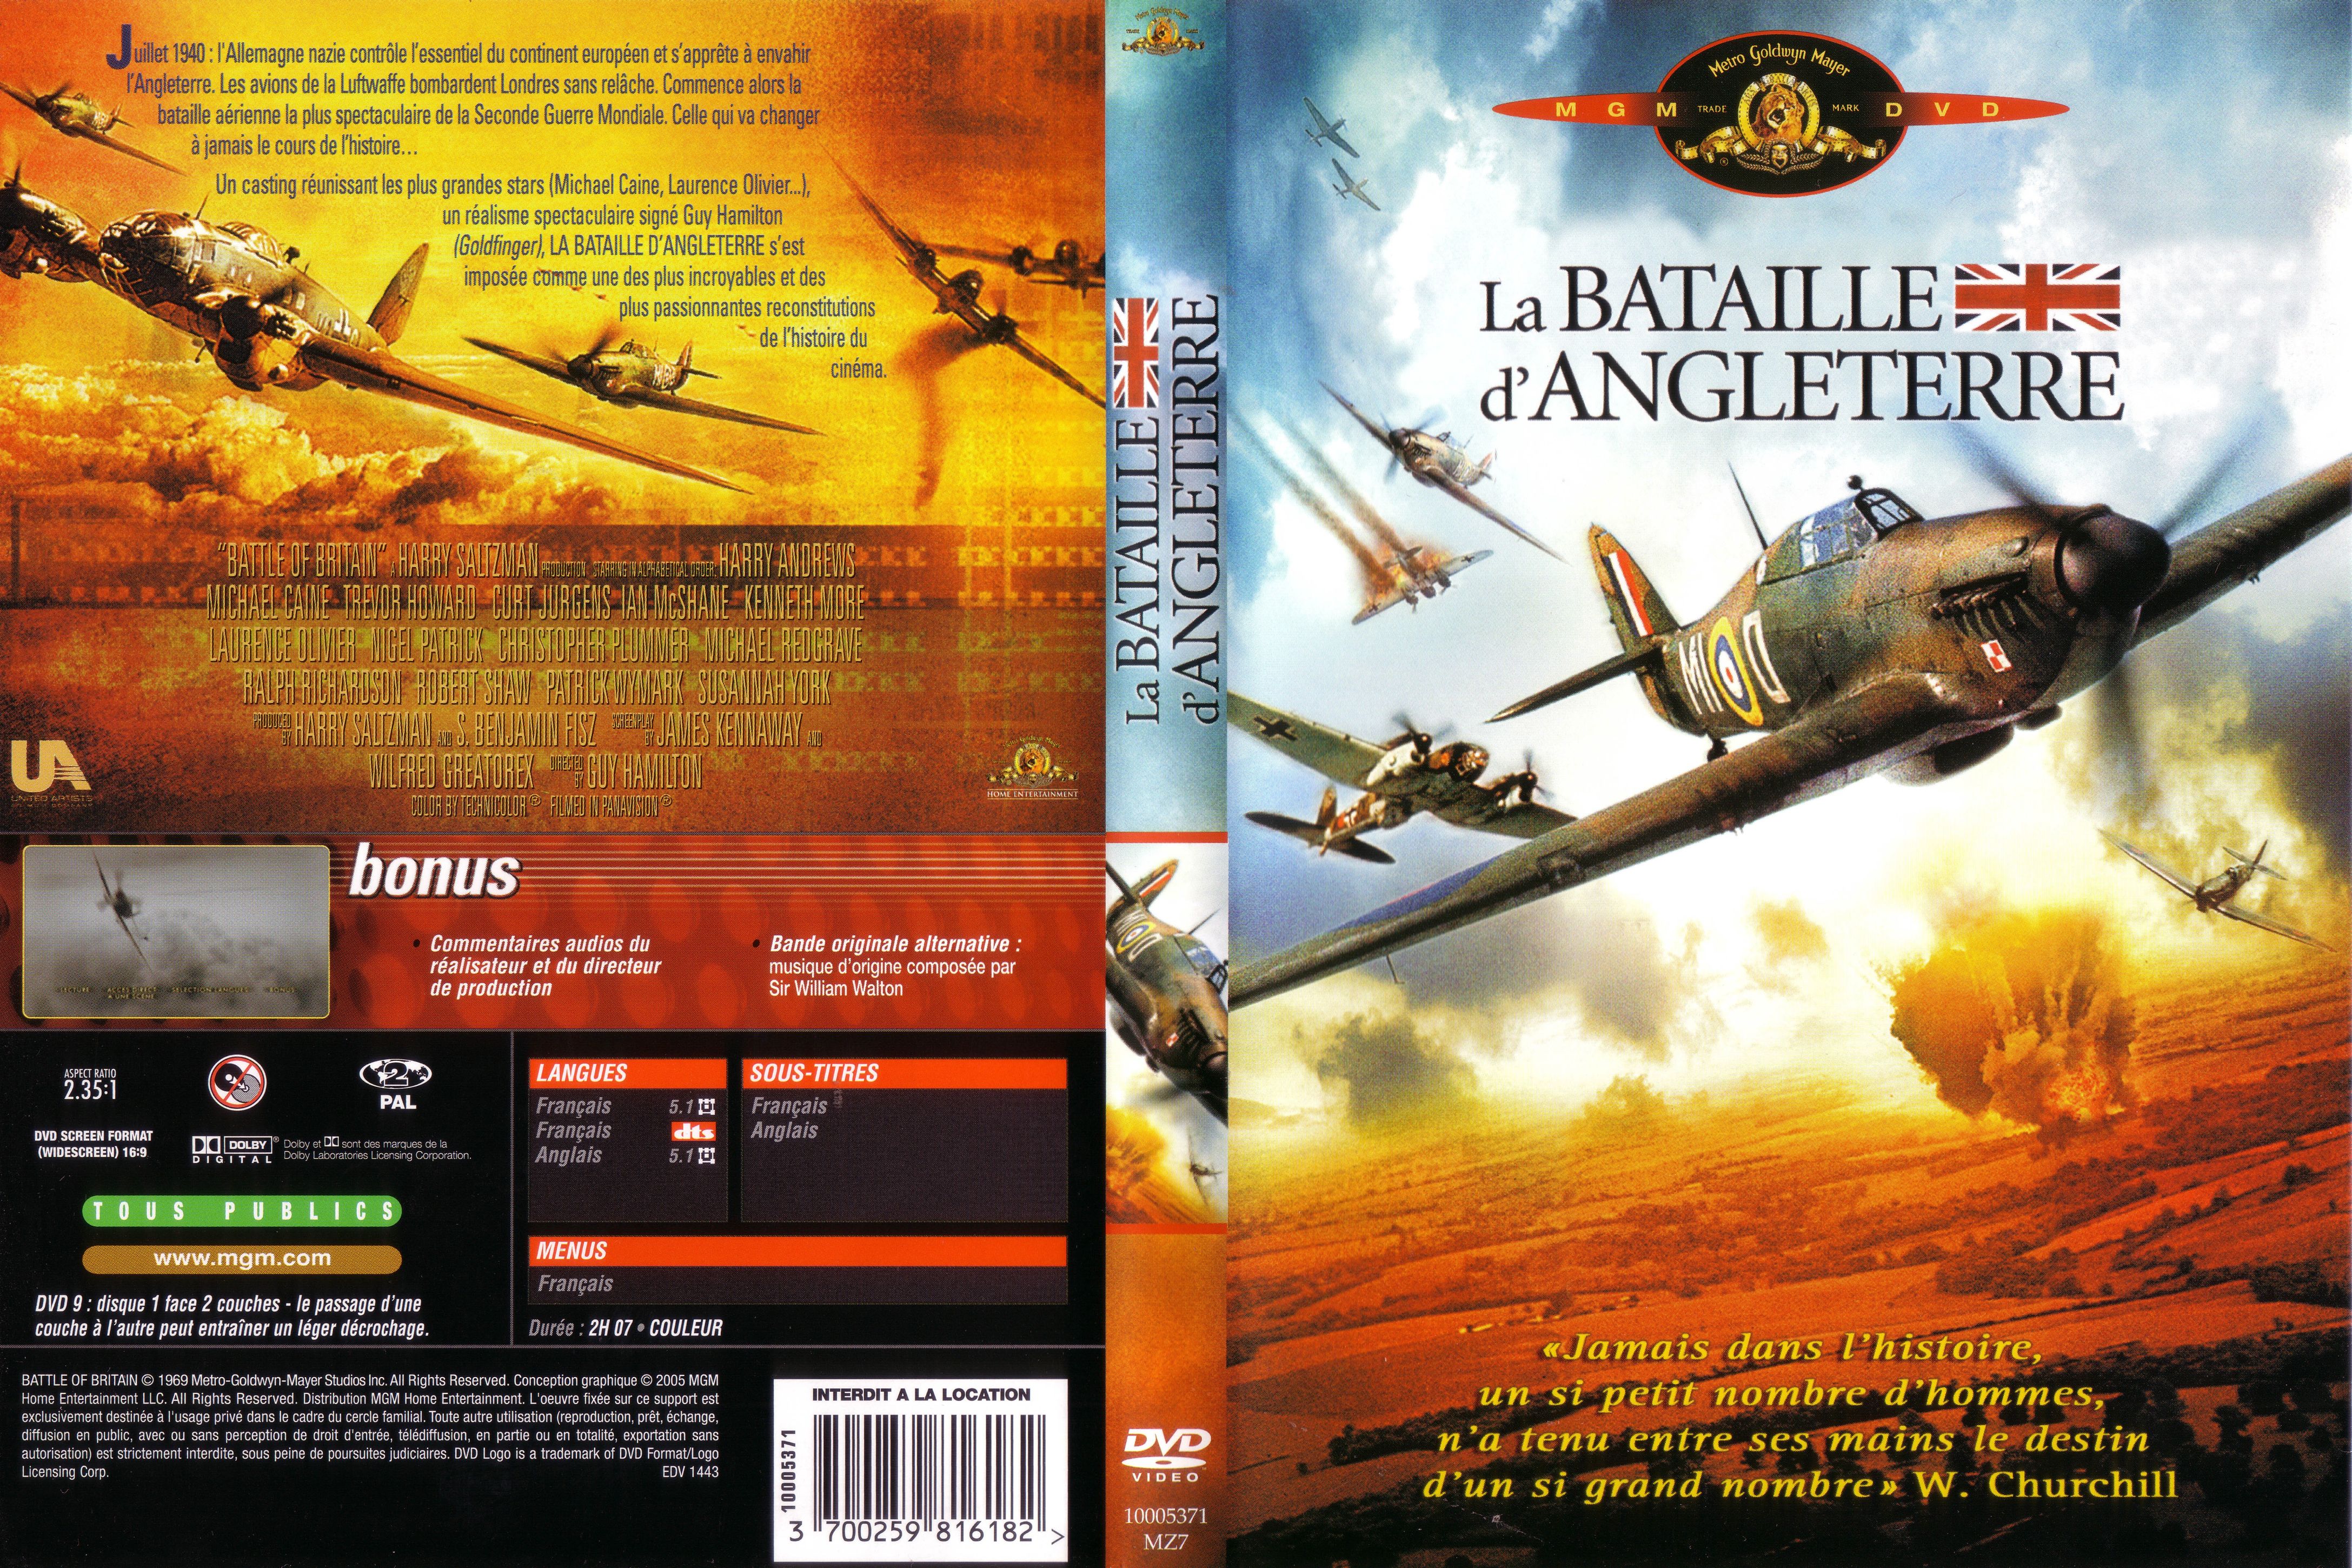 Jaquette DVD La bataille d